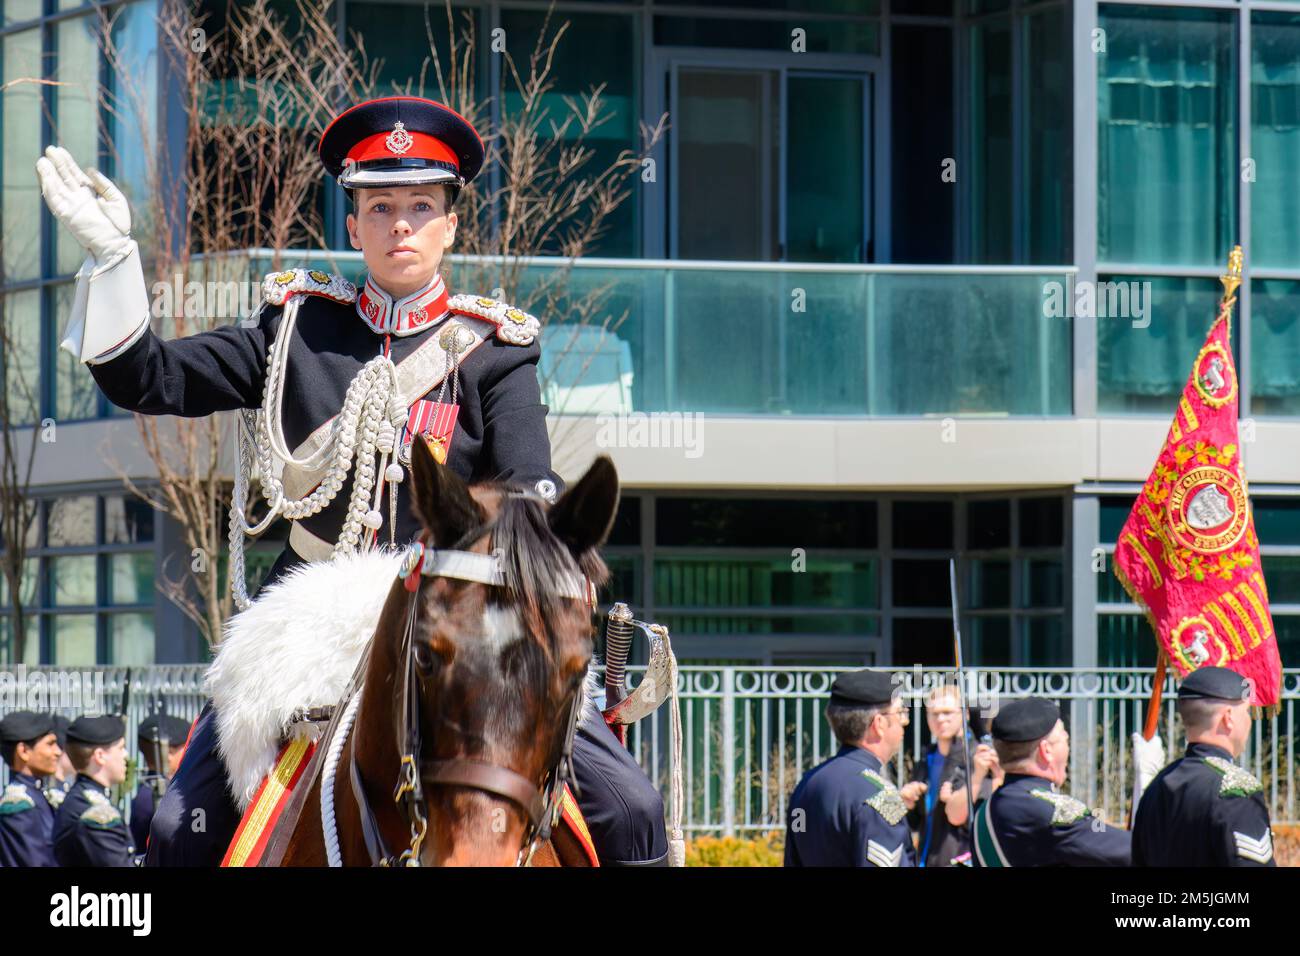 Un ufficiale militare femminile guida lo squadrone del cavallo durante la parata militare nelle strade della città. Foto Stock